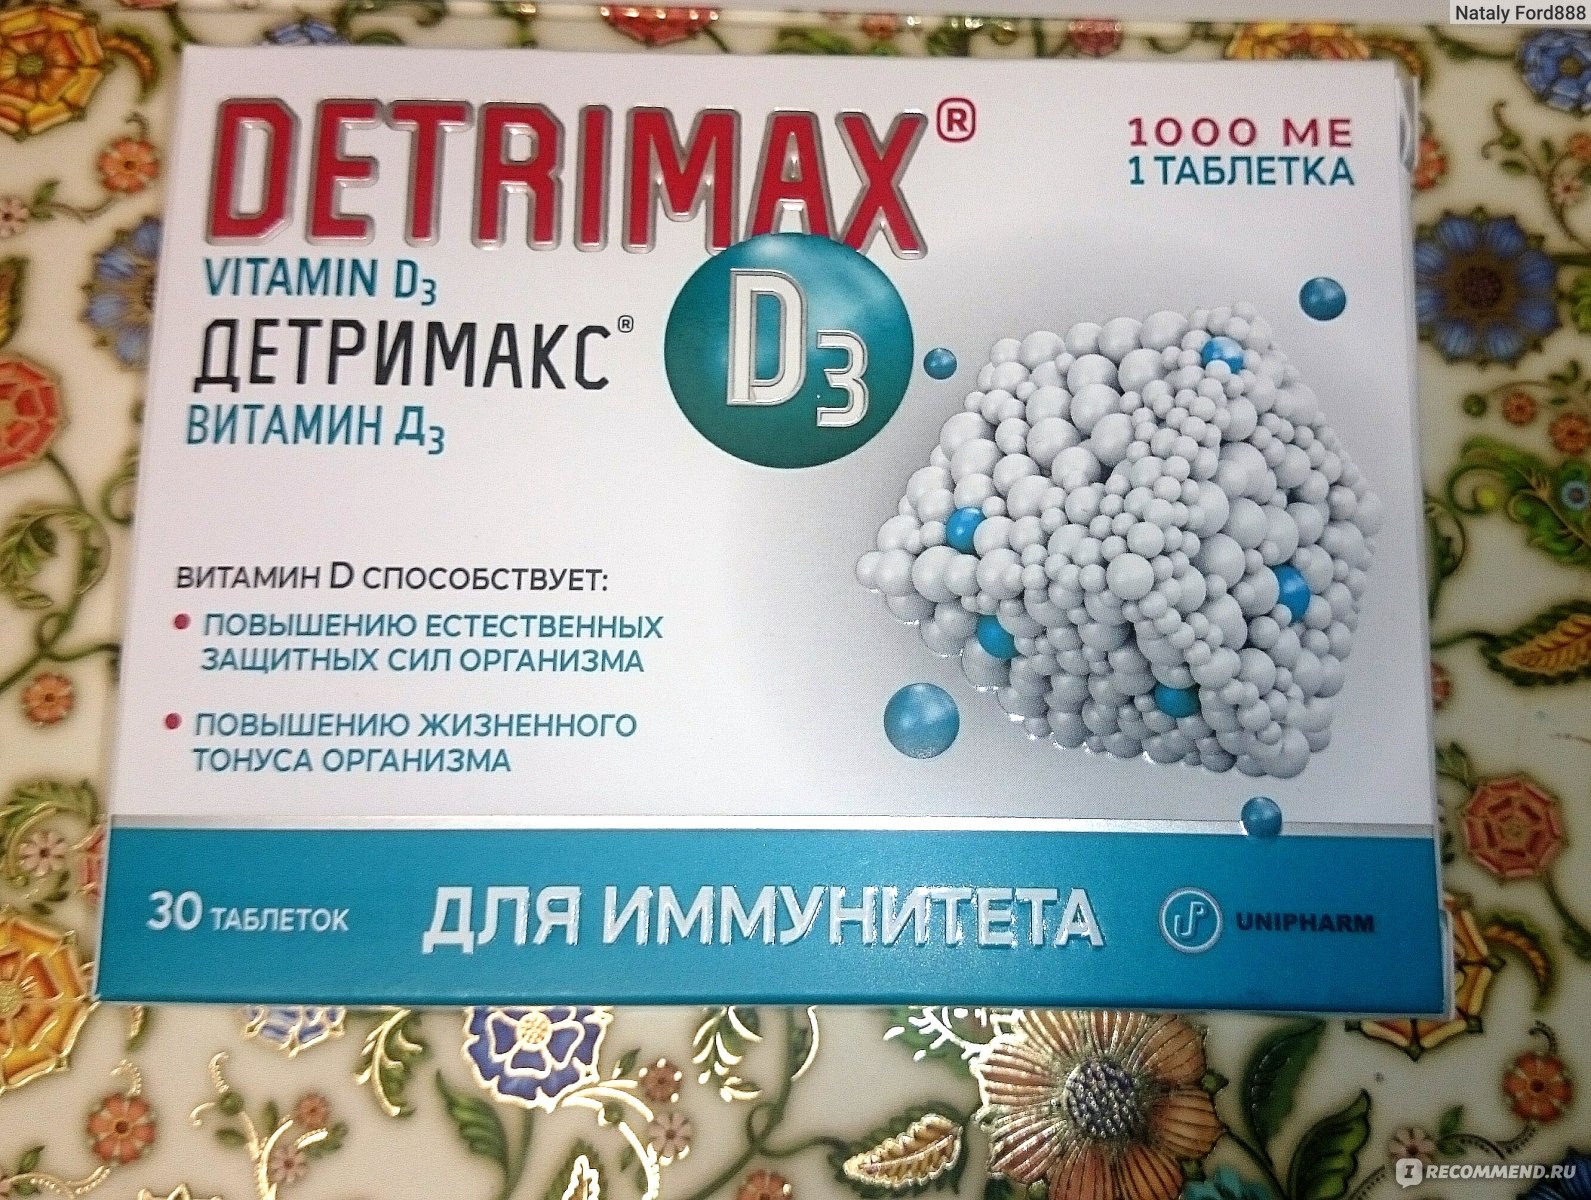 Как принимать таблетки детримакс 2000